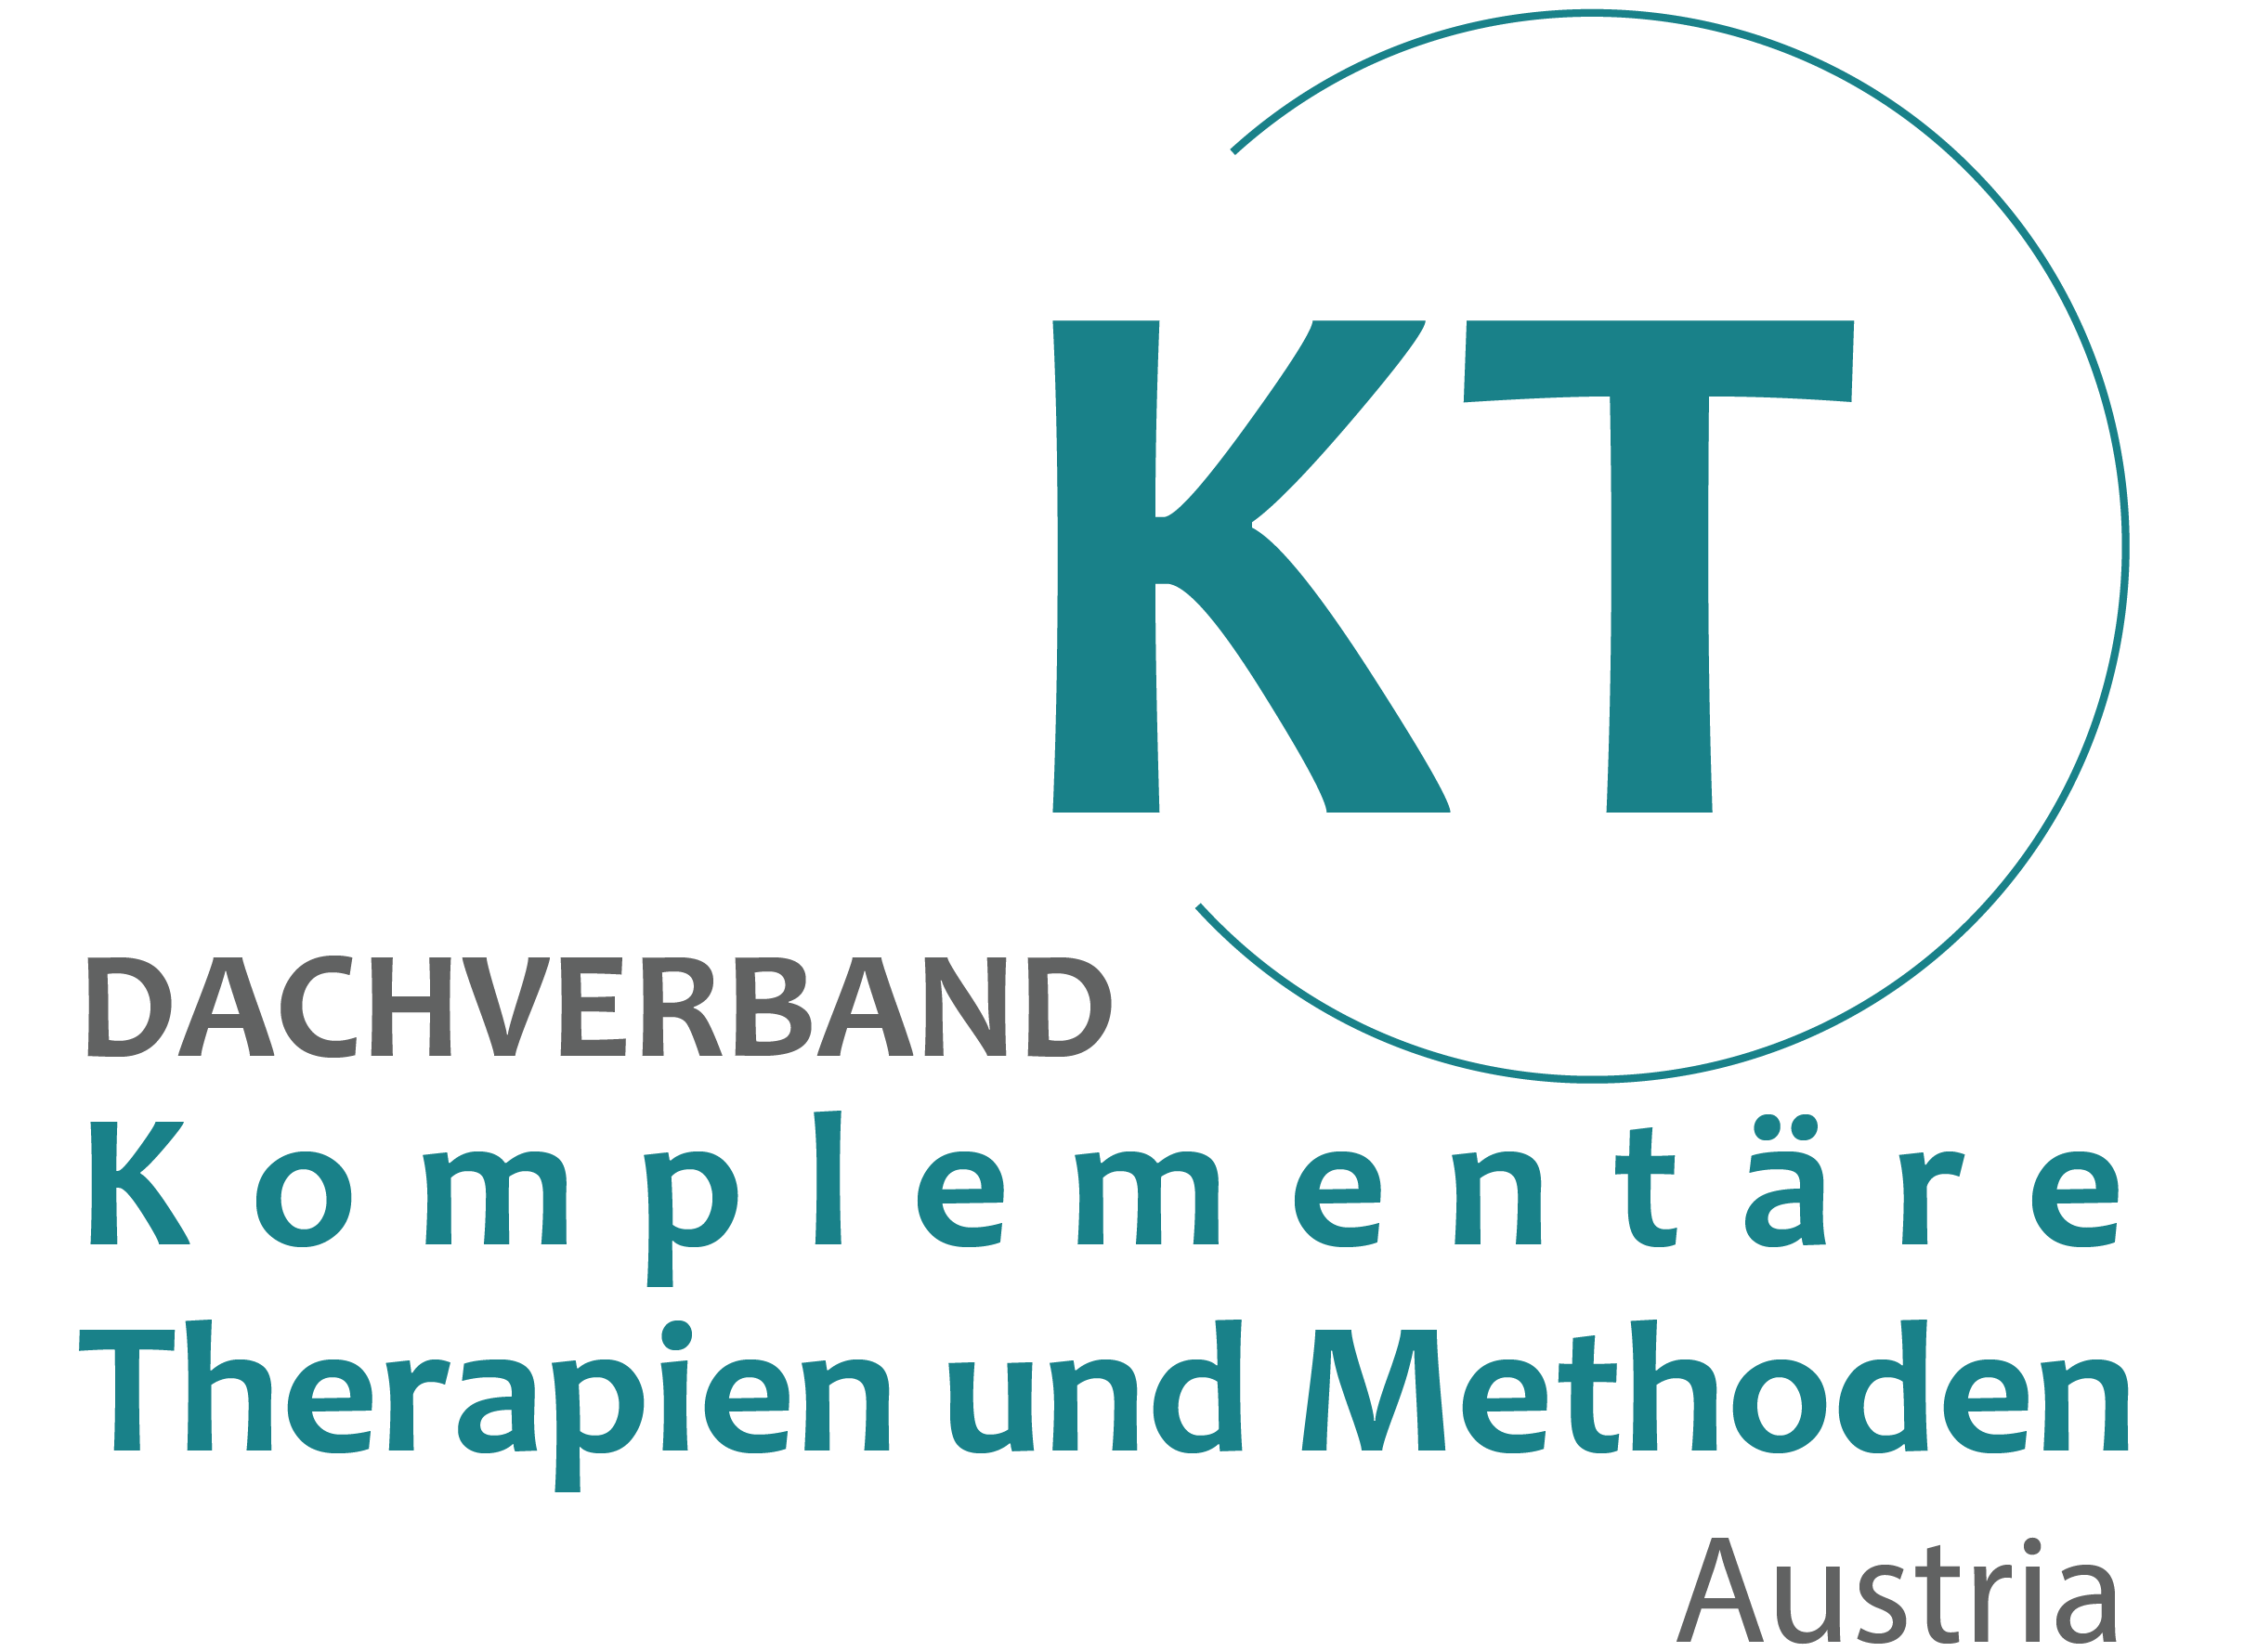 Dachverband Komplementäre Therapien und Methoden Austria